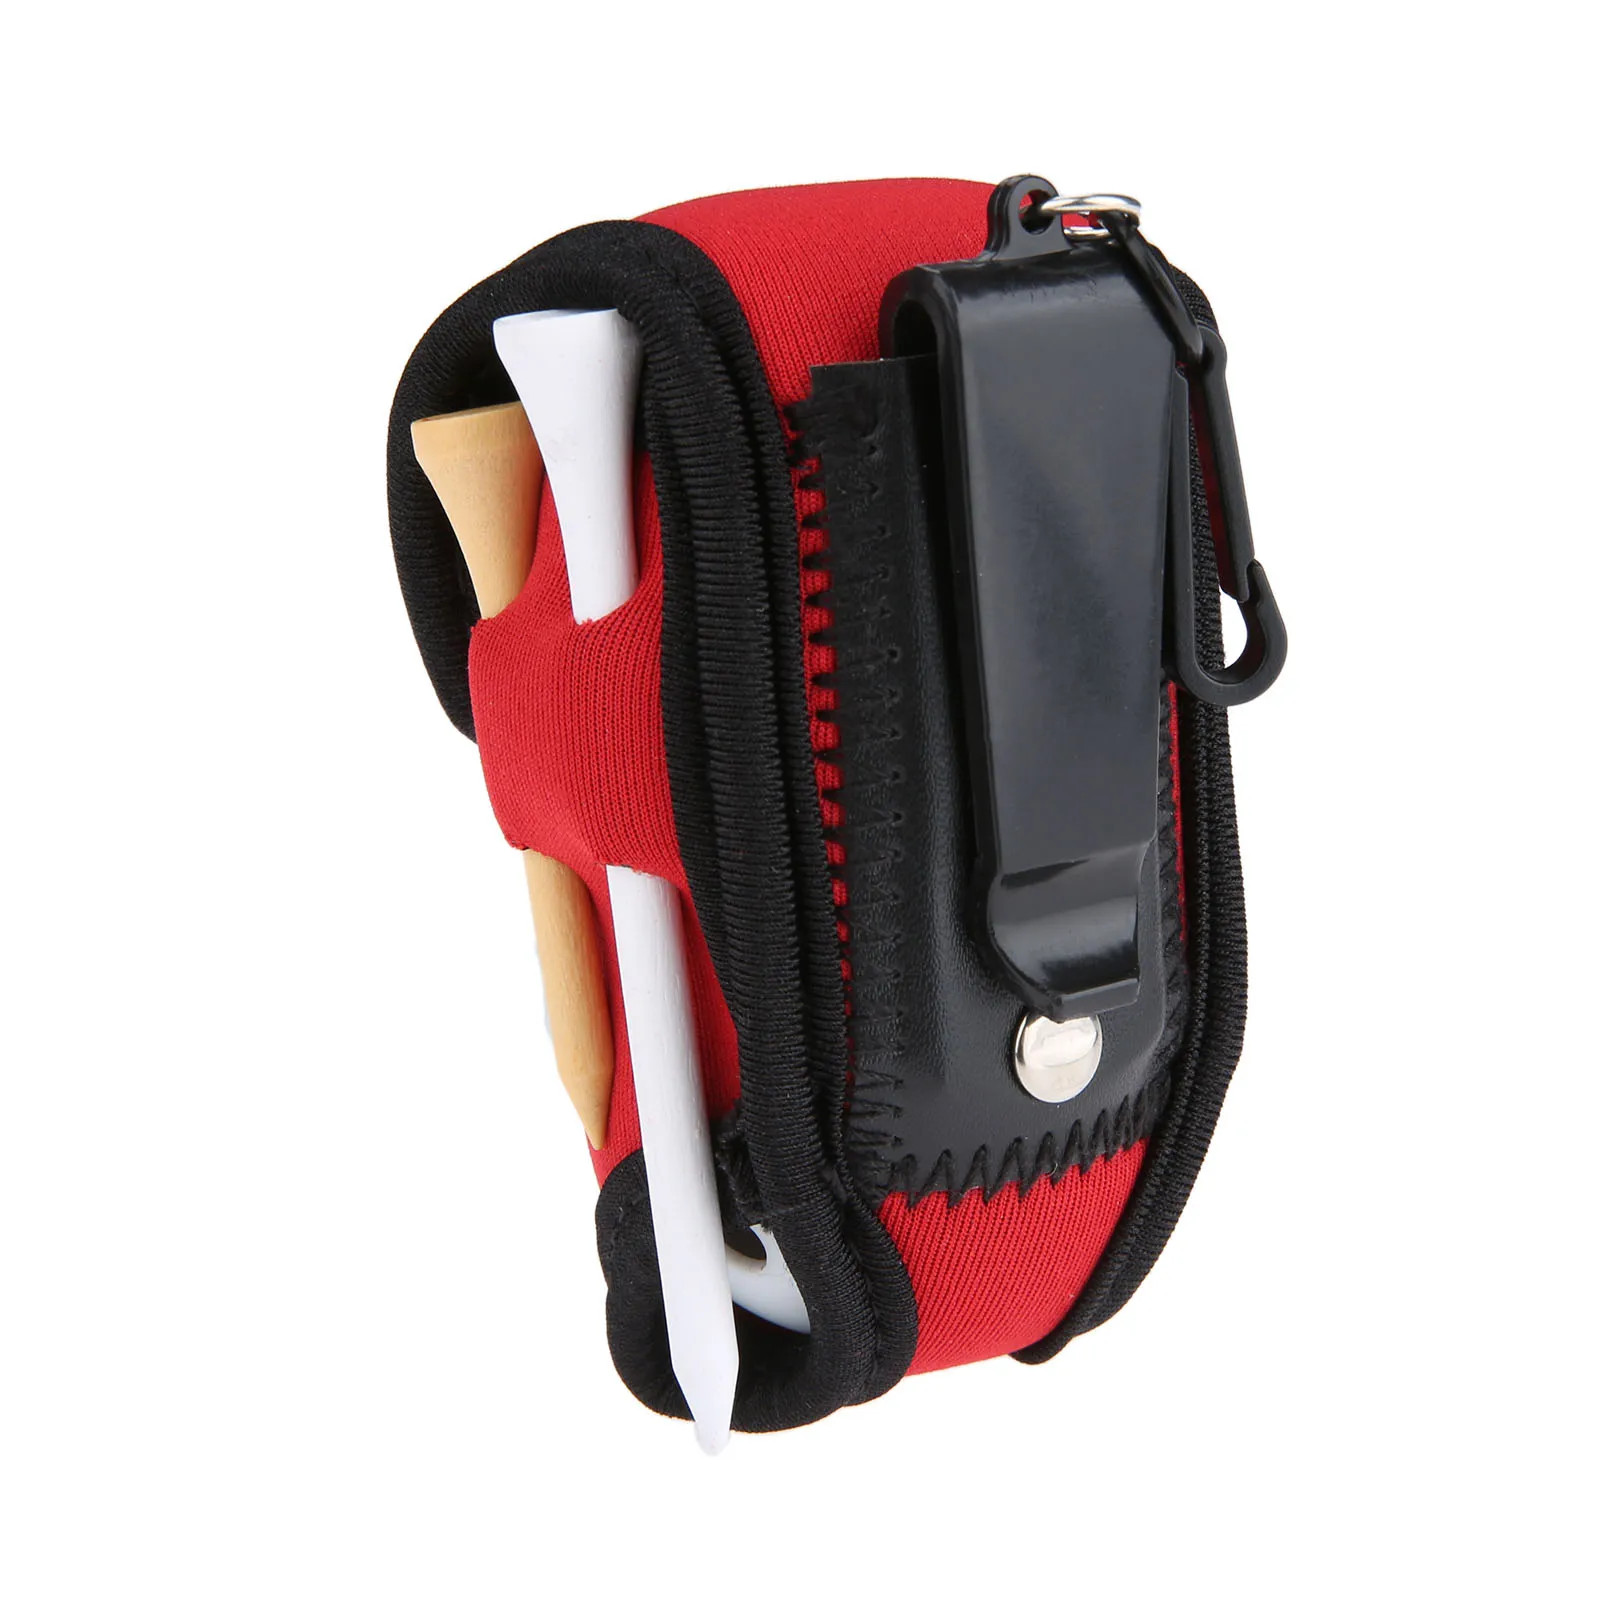 Портативный неопрен мини-гольф мяч мешок Ти для гольфа держатель для хранения Carry Чехол пакет с пояс клип для тренировок 8 цветов